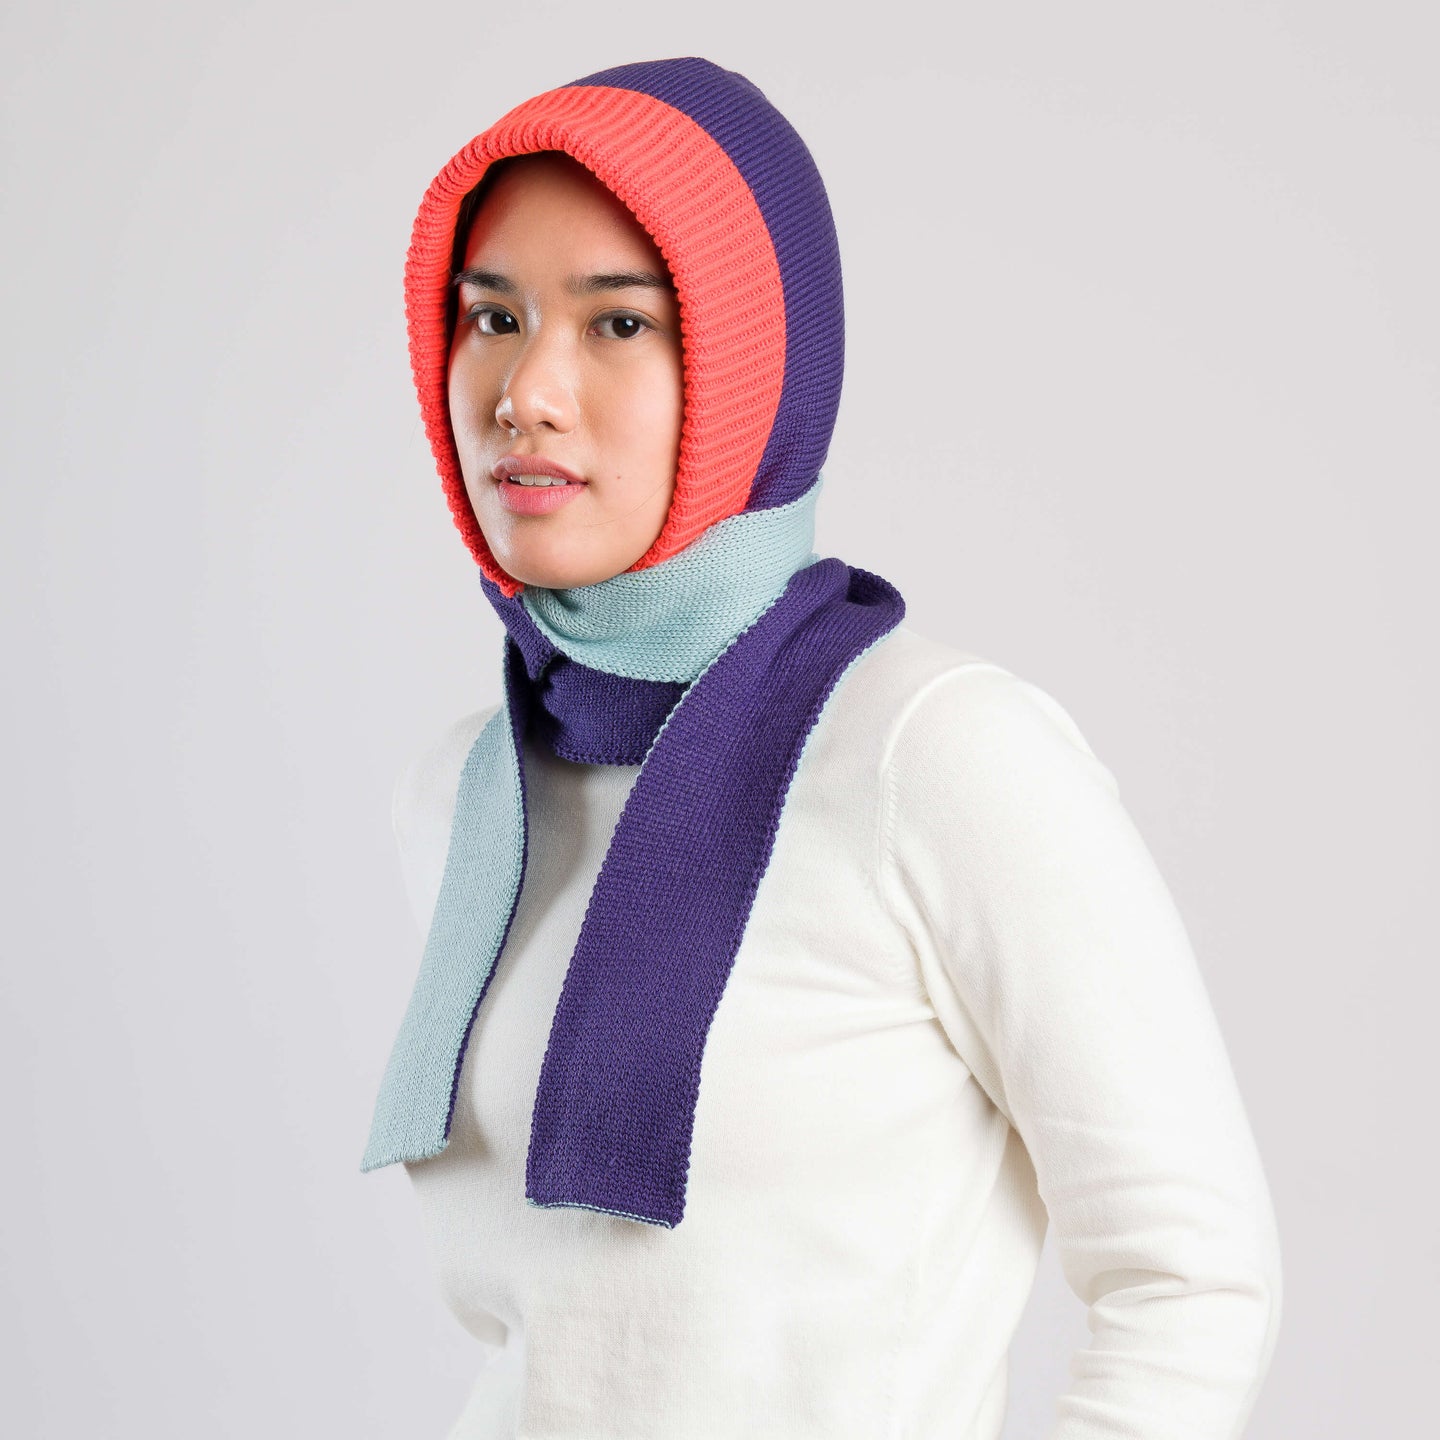 Polder Knit Hooded Scarf Reversible On Model Wear